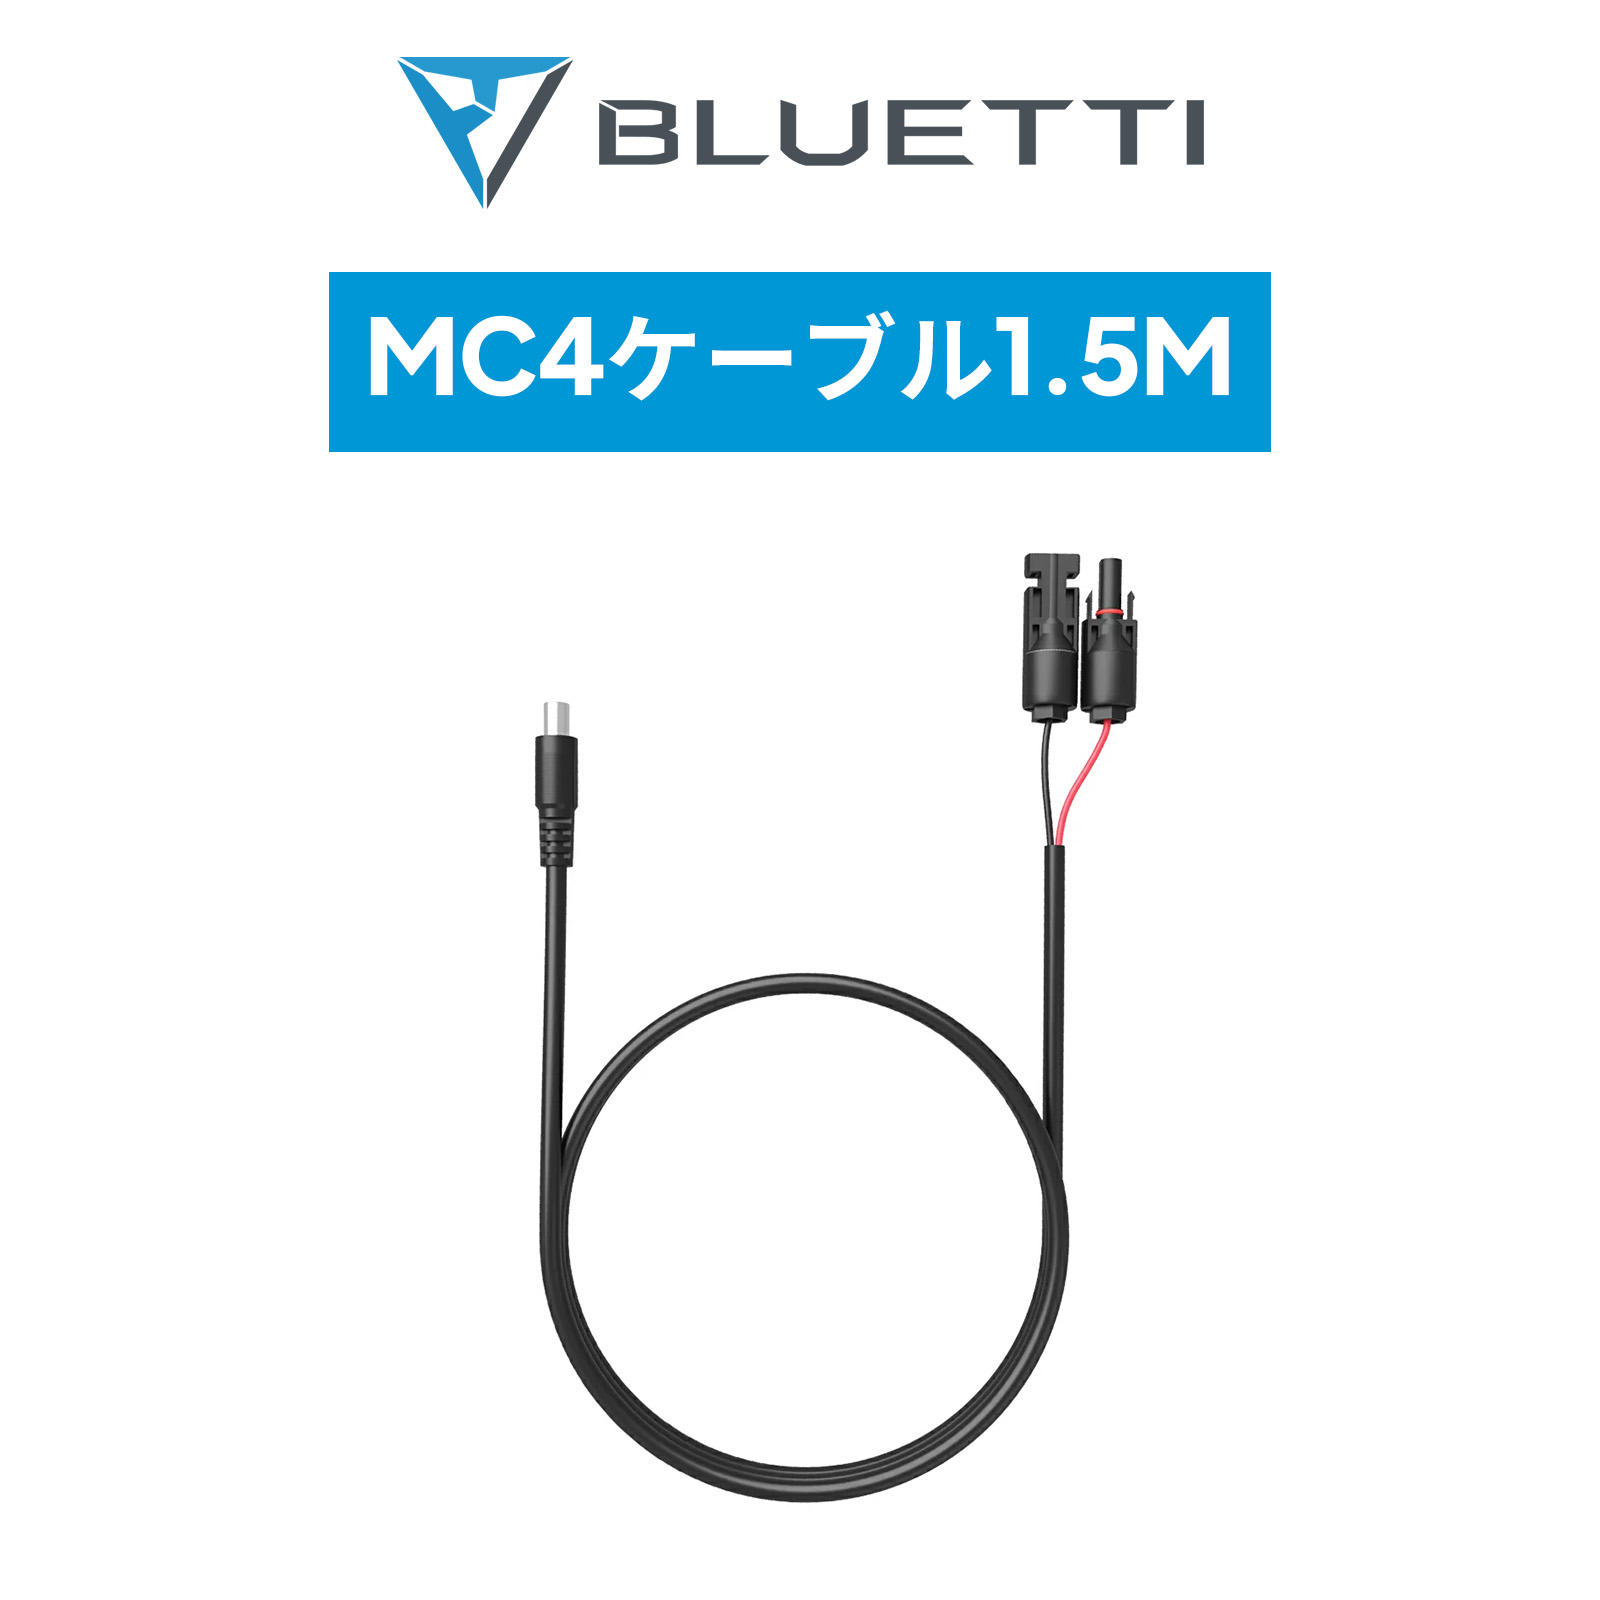 BLUETTI 太陽光パネル用ケーブル ソーラーパネルコネクター MC4→DC 